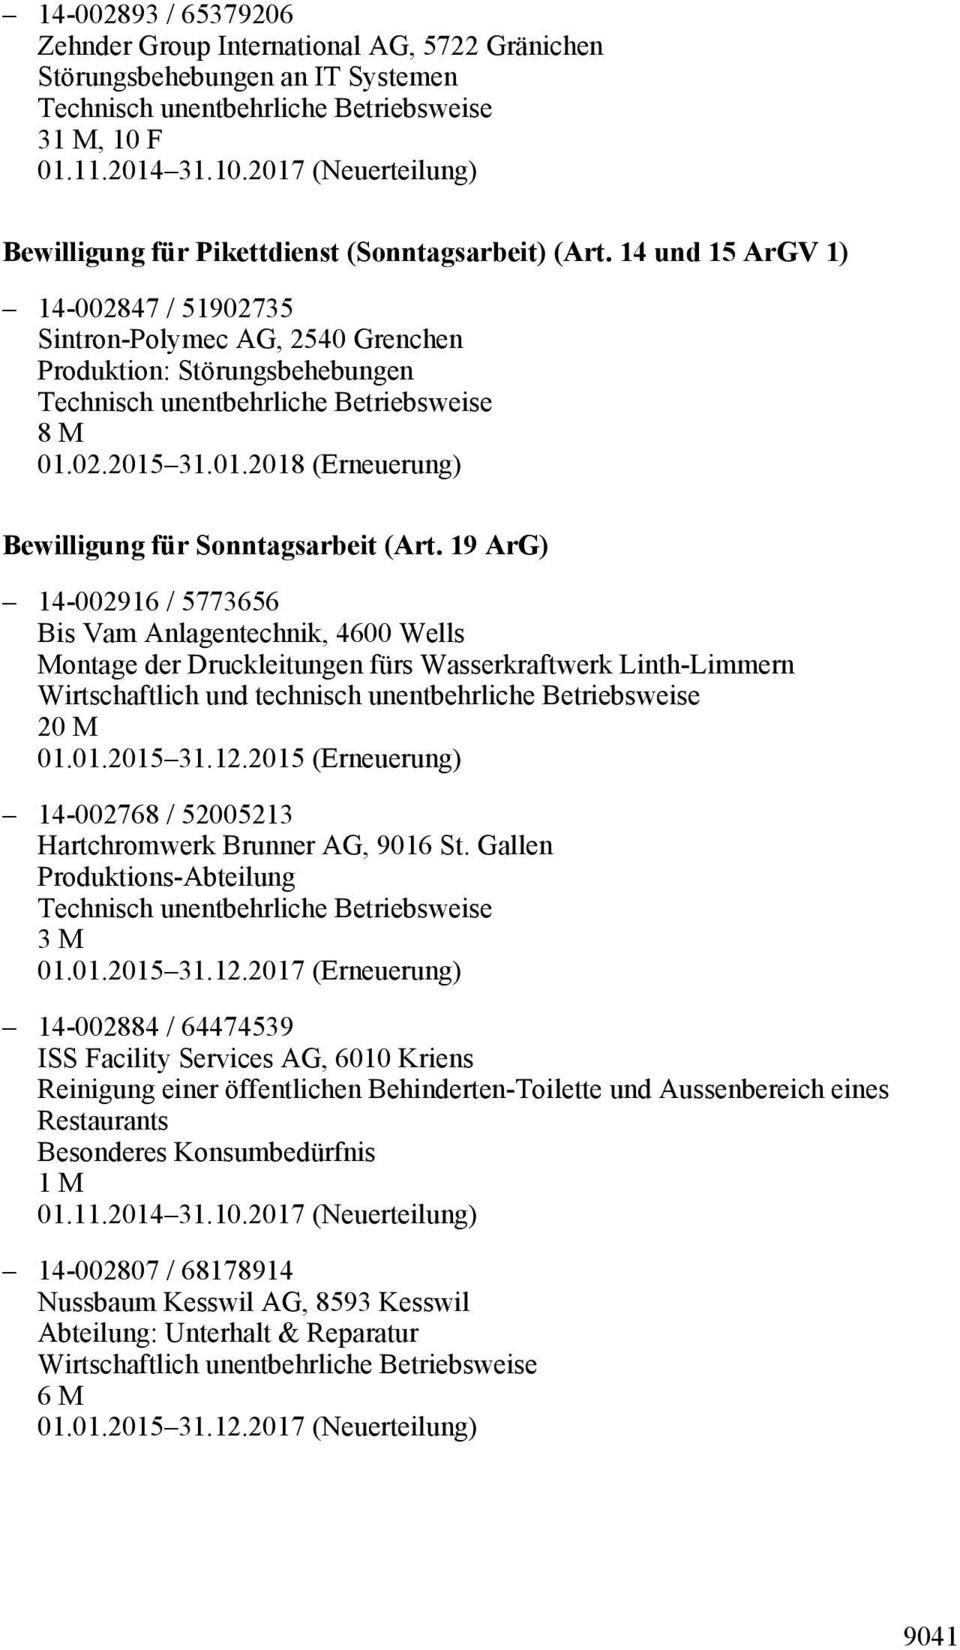 19 ArG) 14-002916 / 5773656 Bis Vam Anlagentechnik, 4600 Wells Montage der Druckleitungen fürs Wasserkraftwerk Linth-Limmern 20 M 01.01.2015 31.12.